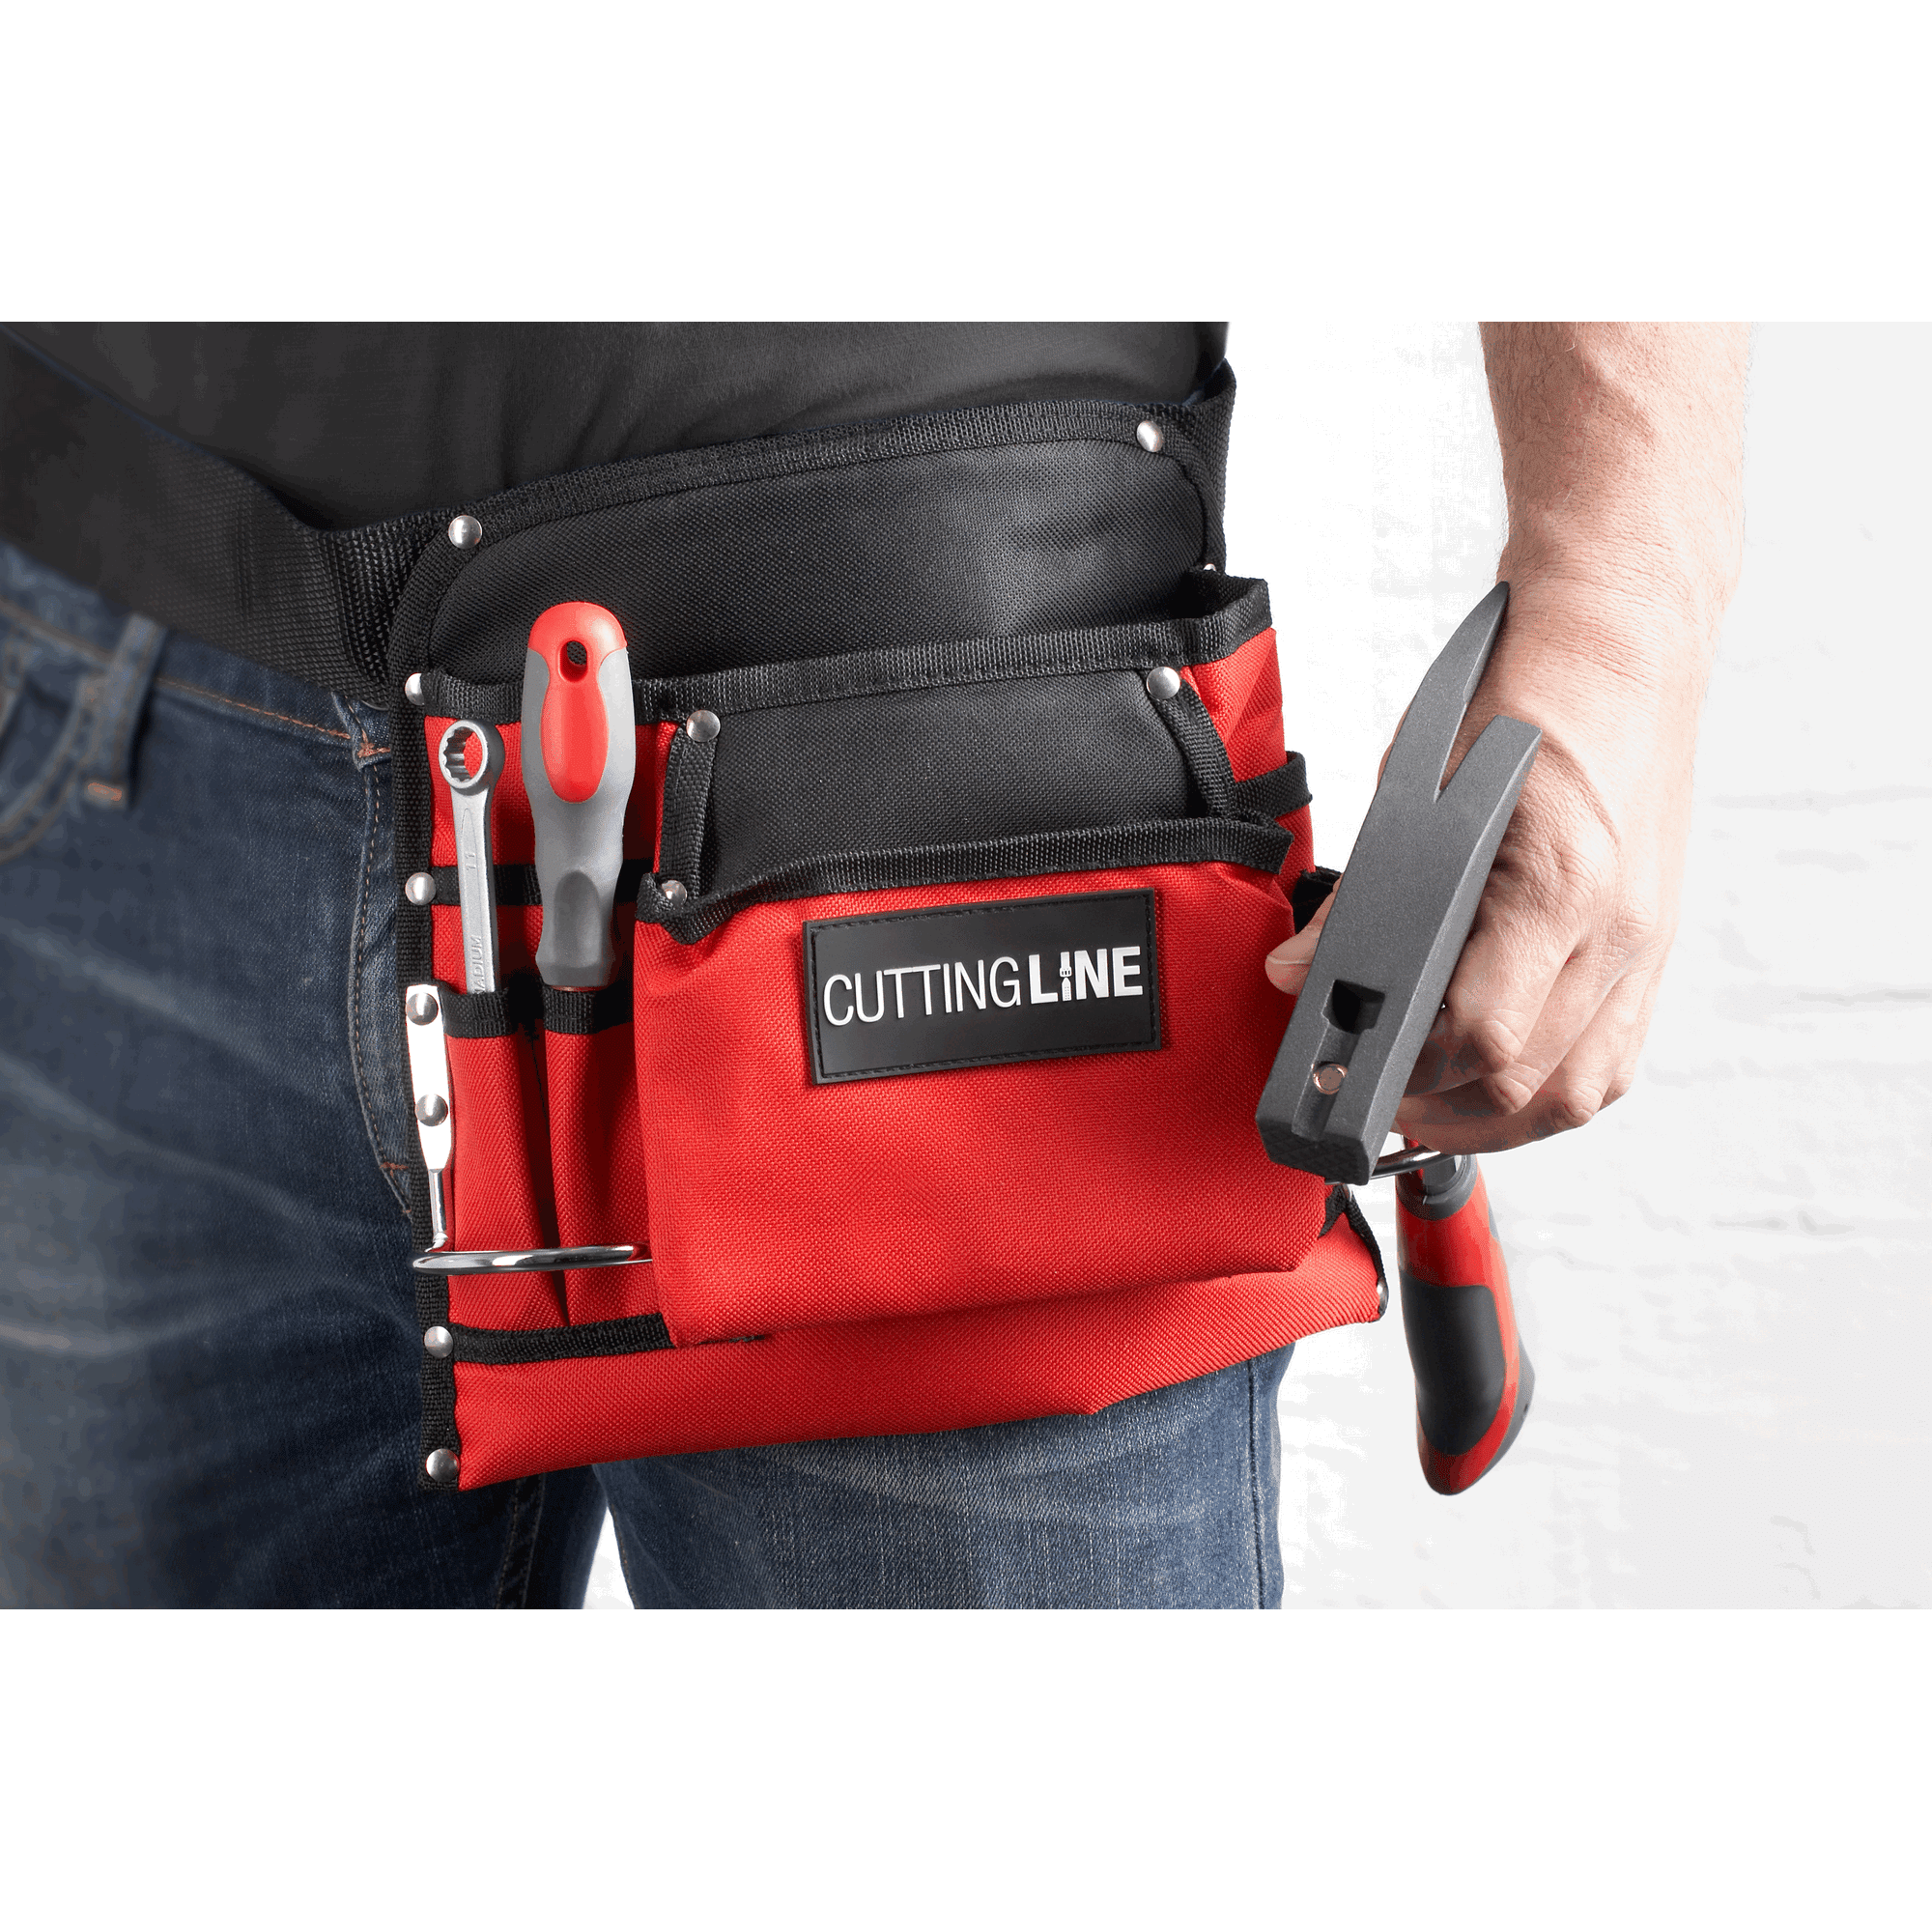 Nagel- und Werkzeugtasche Nylon 8 Taschen rot/schwarz + product picture